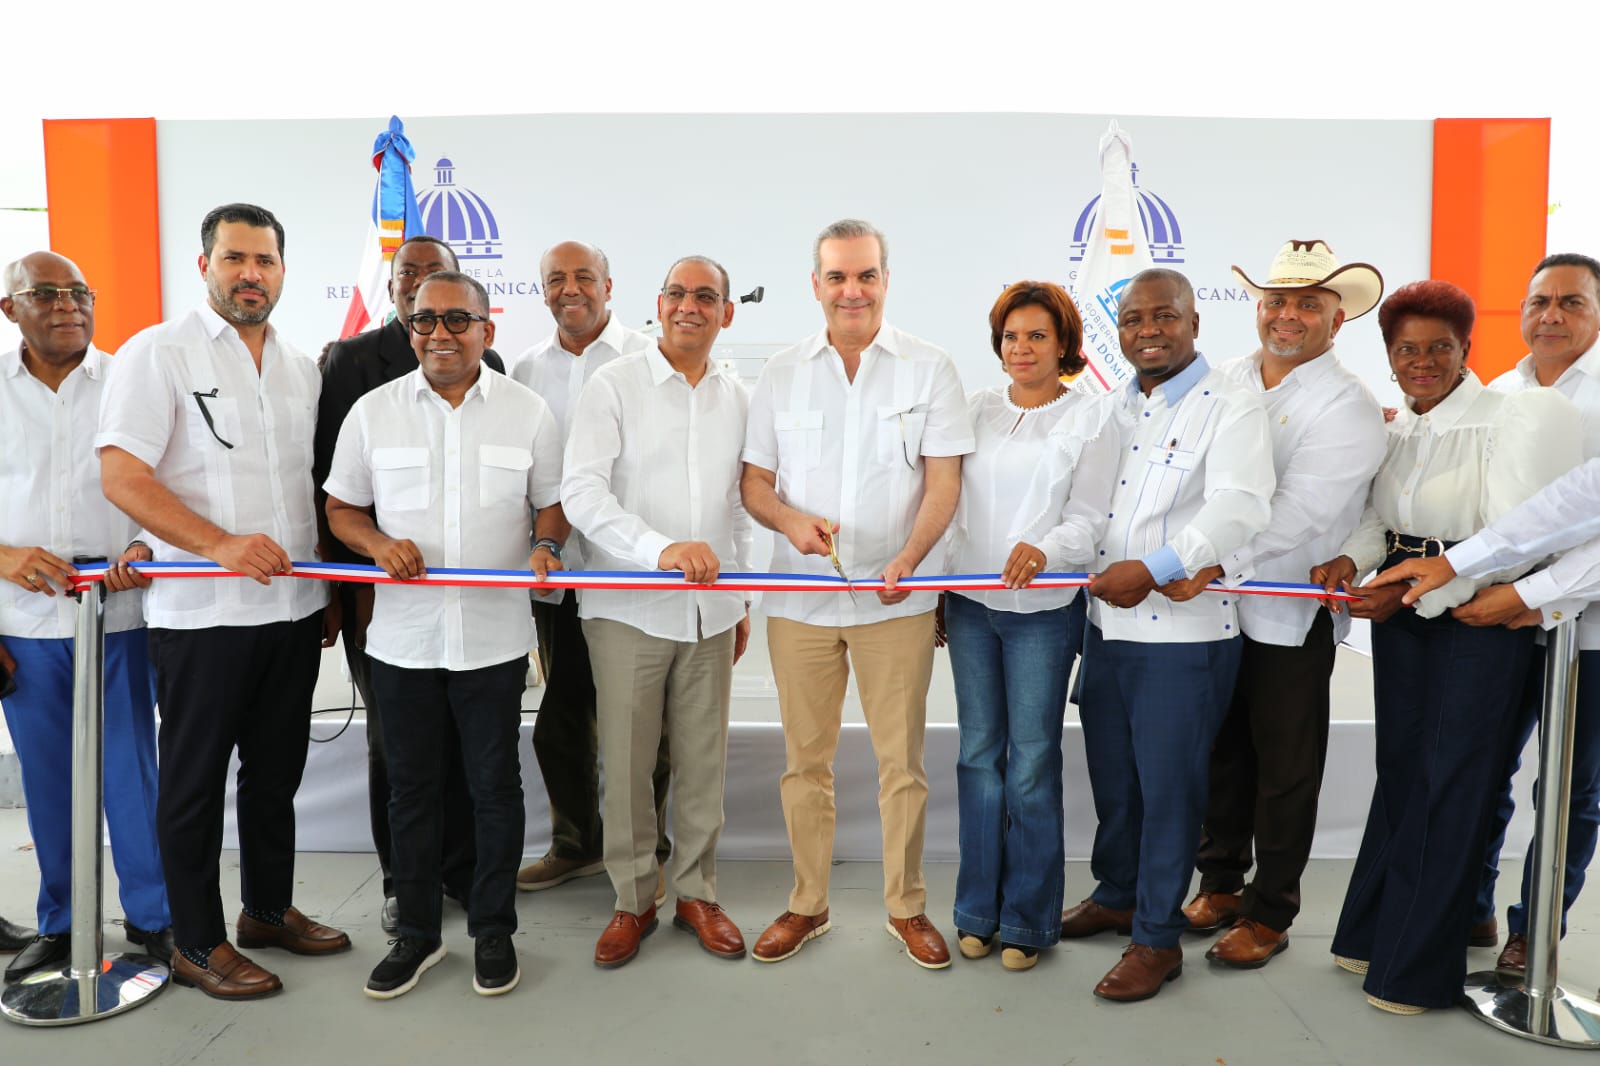 REPÚBLICA DOMINICANA: Presidente Abinader inaugura carretera Chirino-Monte Plata reclamada por más de 40 años; también acueducto y CAIPI para la provincia